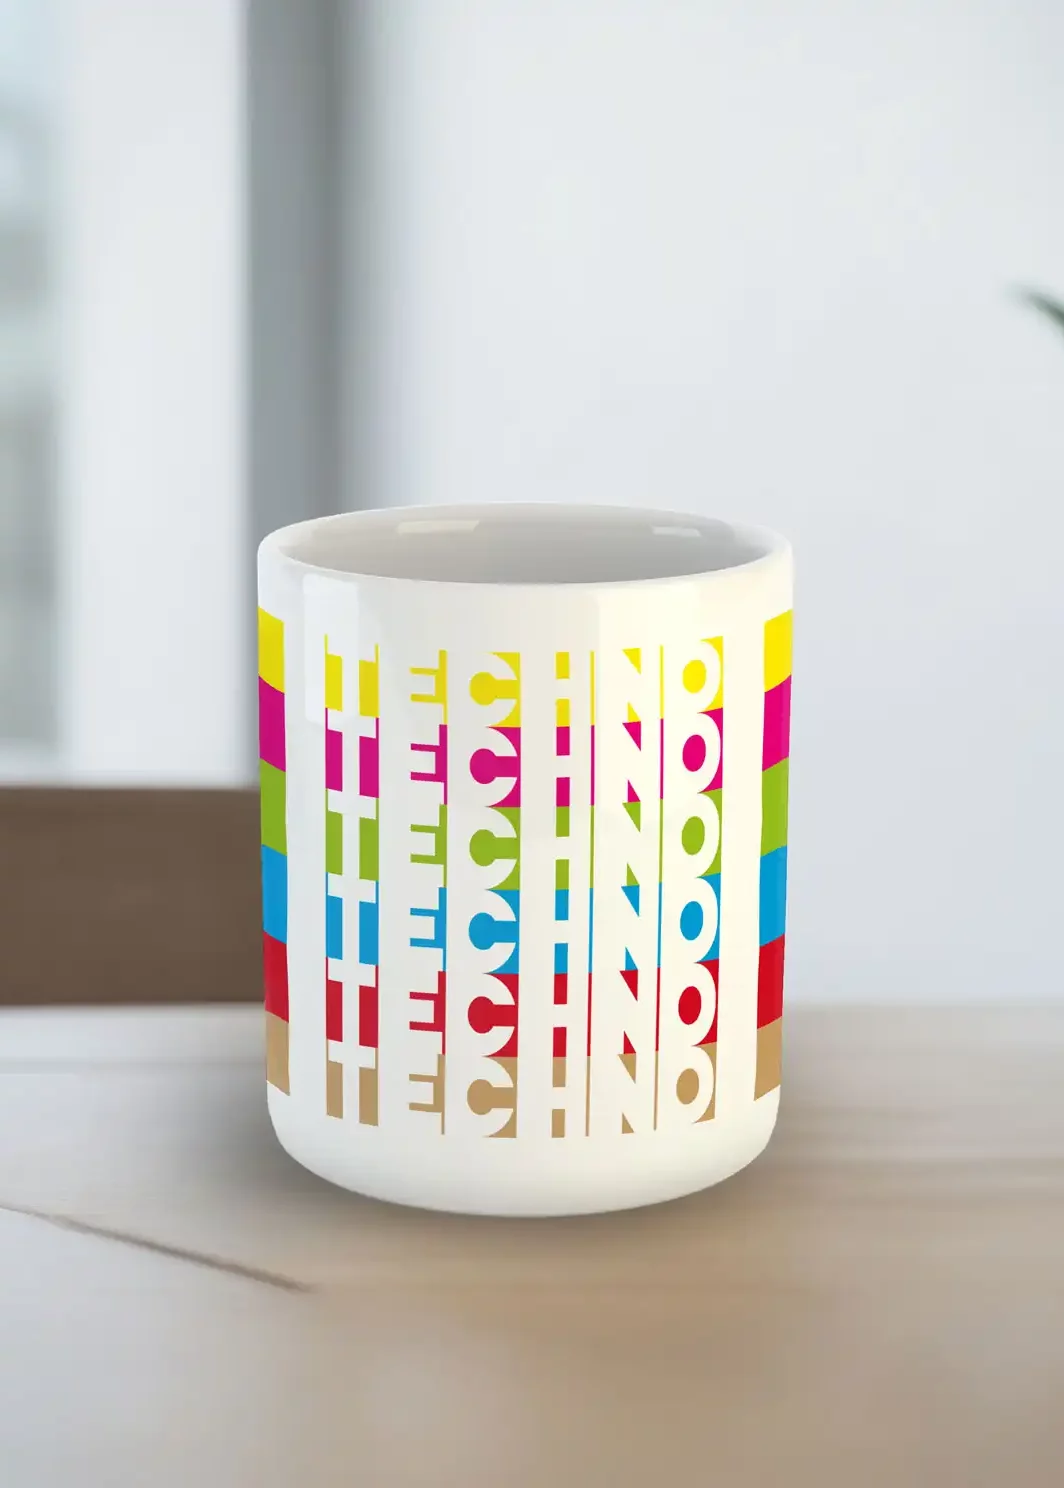 Eine Tasse mit dem Text Techno in verschiedenen Farben